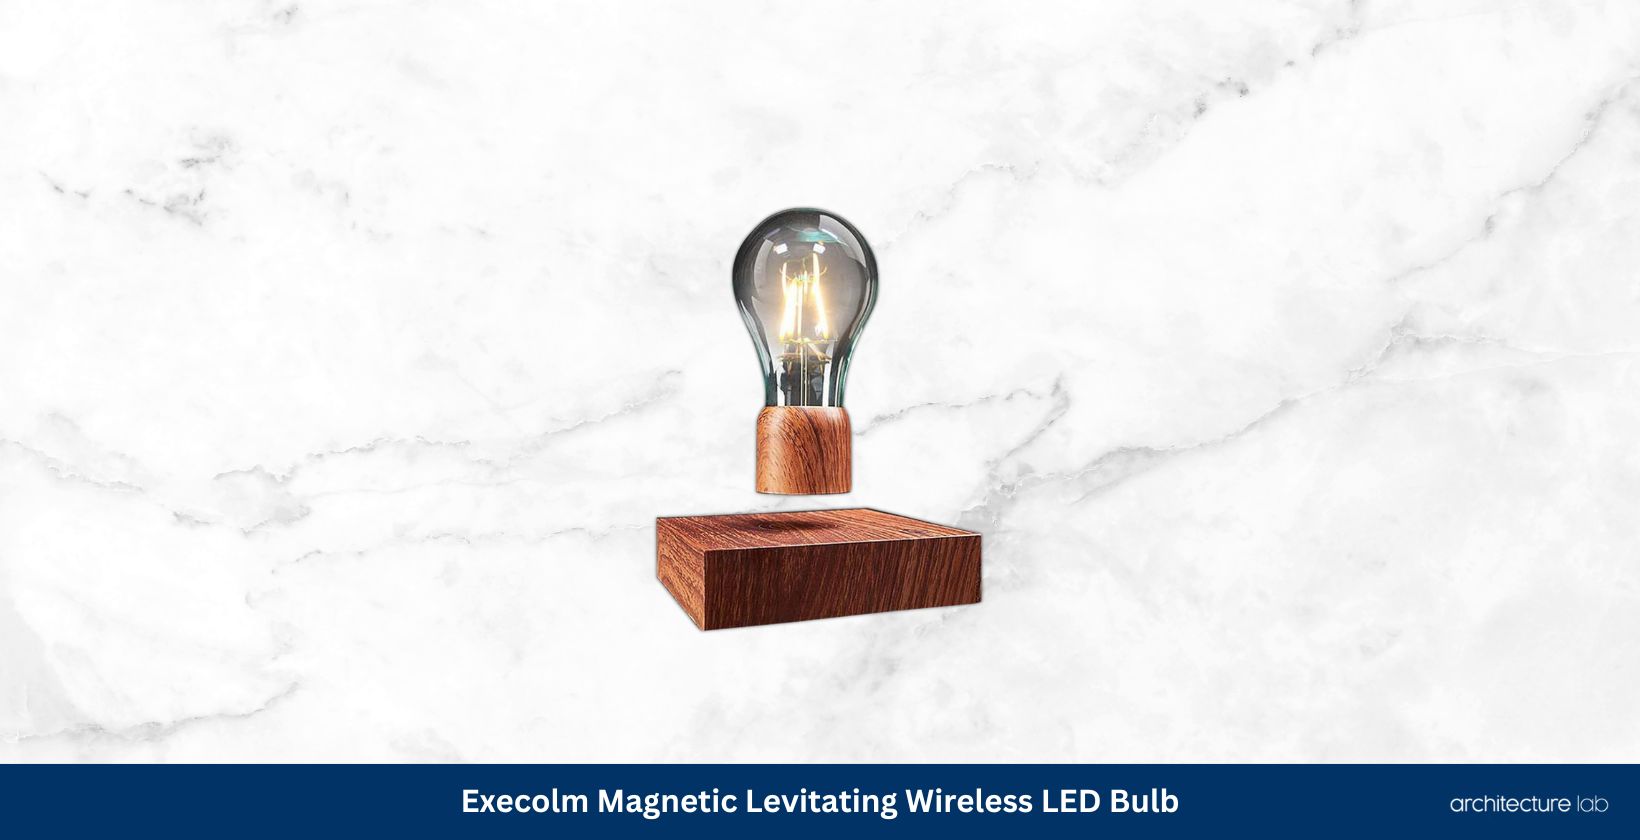 Exekoml magnetic levitating floating wireless led light bulb